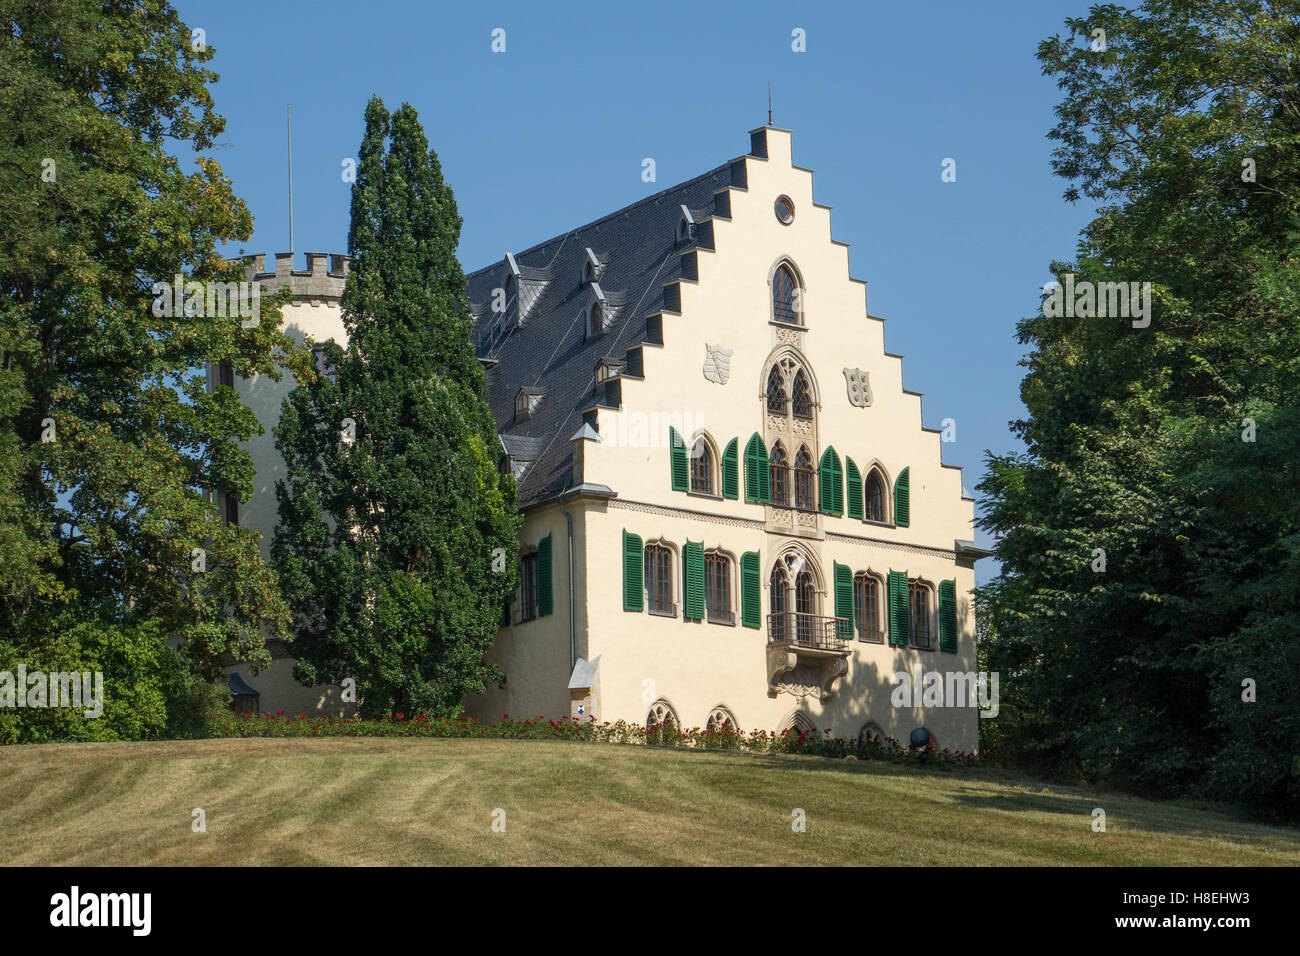 Rosenau Palace, lieu de naissance du Prince Albert, époux de la reine Victoria, guanaco, Bavaria, Germany, Europe Banque D'Images